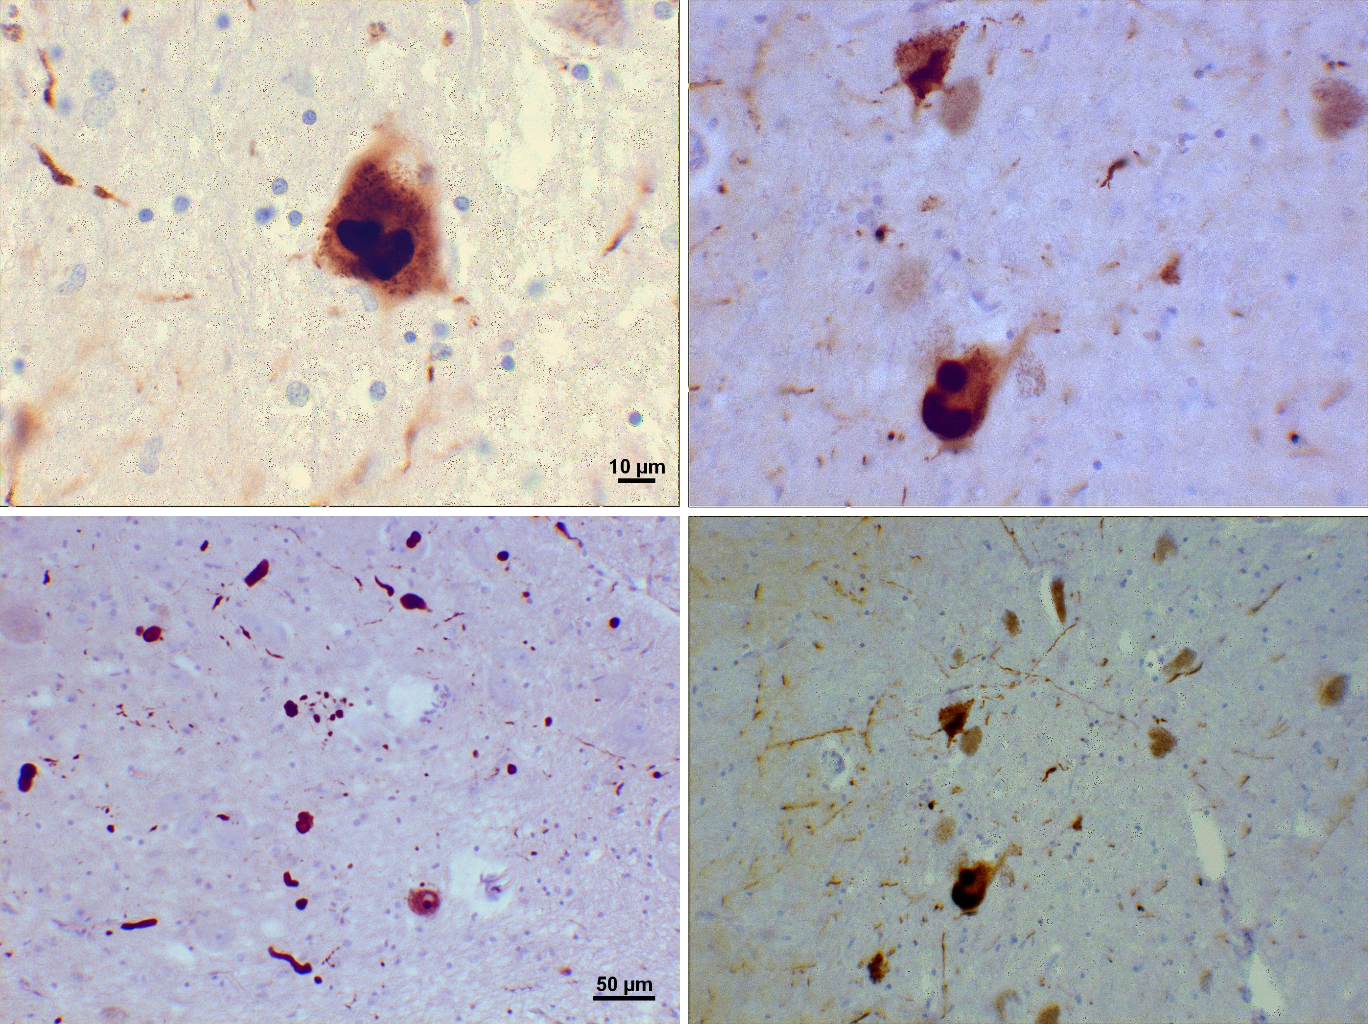 Las fotomicrografías de regiones de la sustancia negra de este paciente con Parkinson muestran cuerpos de Lewy y neuritas de Lewy en varios aumentos. Los paneles superiores muestran imágenes a 60x de las inclusiones intraneuronales de alfa-sinucleína agregadas para formar cuerpos de Lewy. Los paneles inferiores son imágenes a 20x que muestran neuritas de Lewy en forma de filamentos y cuerpos de Lewy redondeados de varios tamaños. En el fondo se aprecian células de la sustancia negra cargadas de neuromelanina. Tinciones utilizadas: anticuerpo monoclonal de ratón anti-alfa-sinucleína; contratinción de hematoxilina de Mayer.